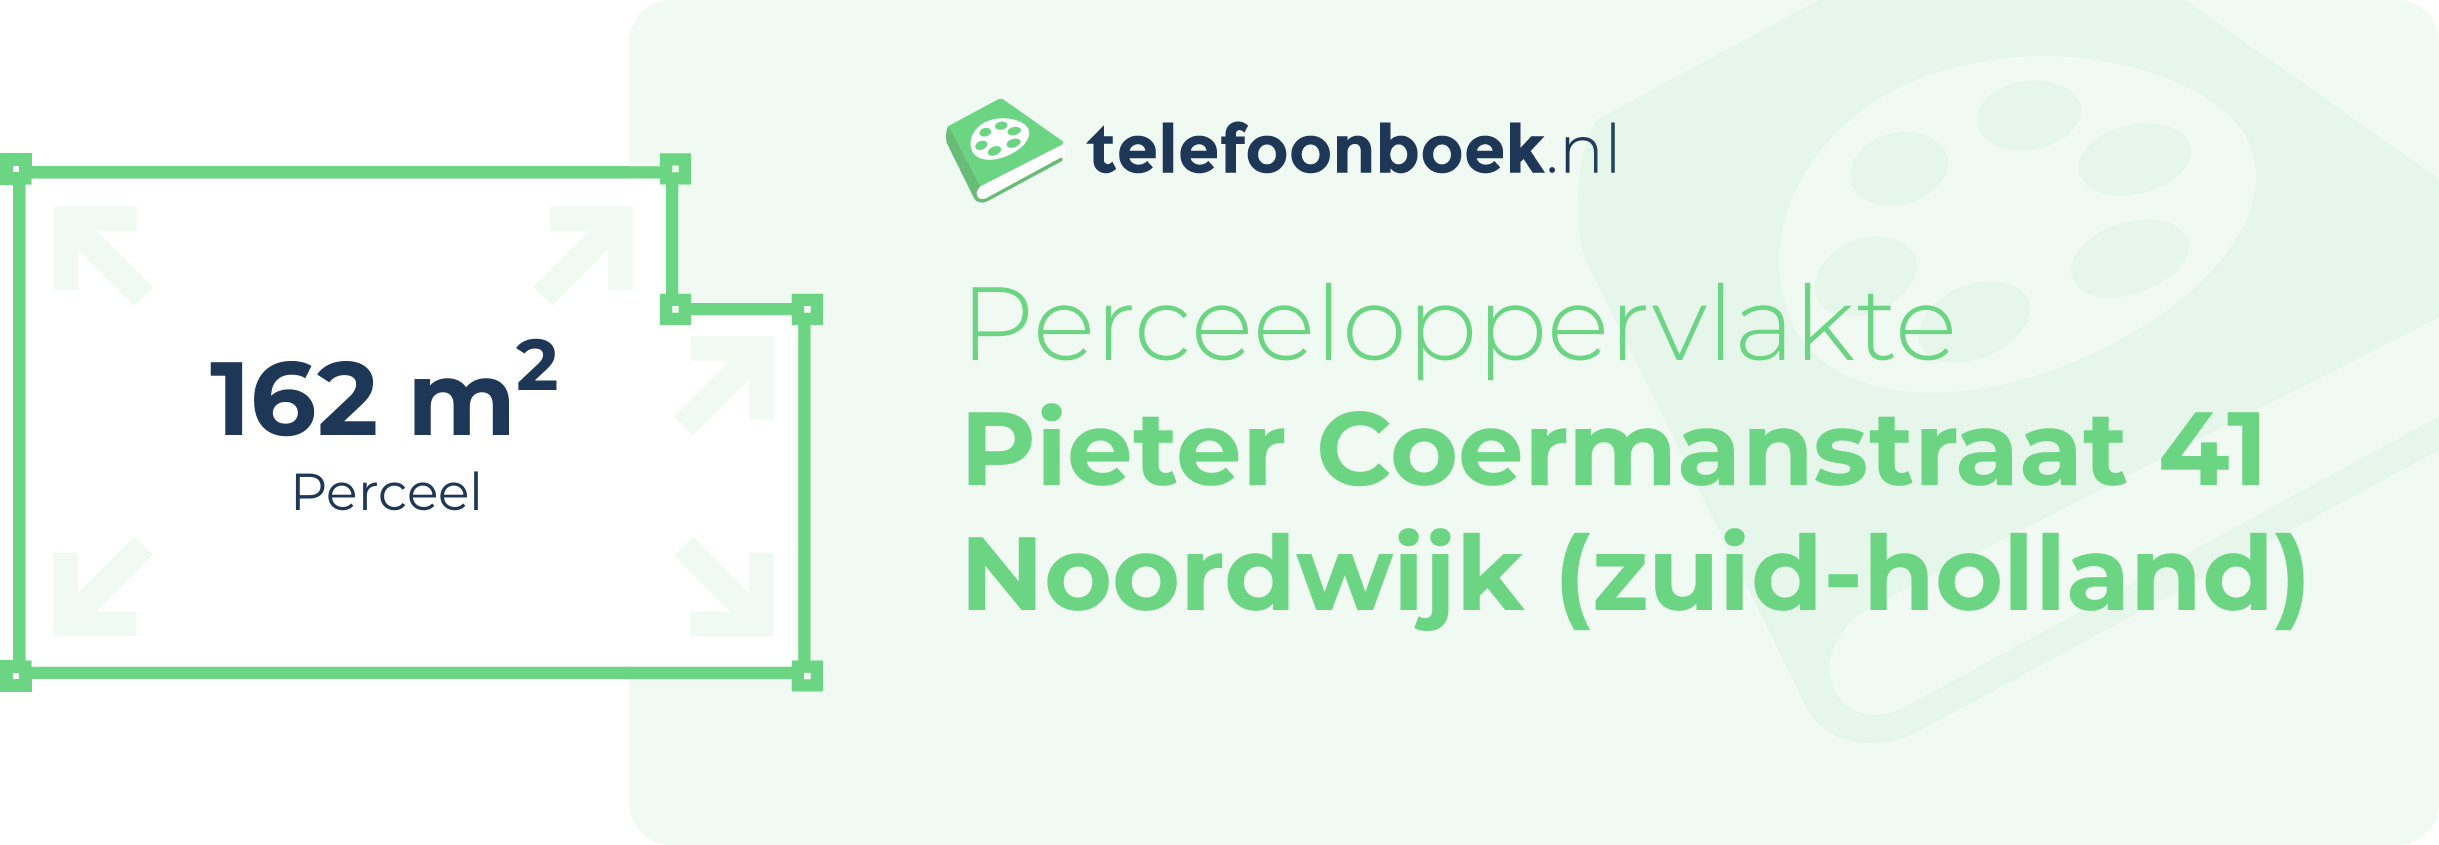 Perceeloppervlakte Pieter Coermanstraat 41 Noordwijk (Zuid-Holland)